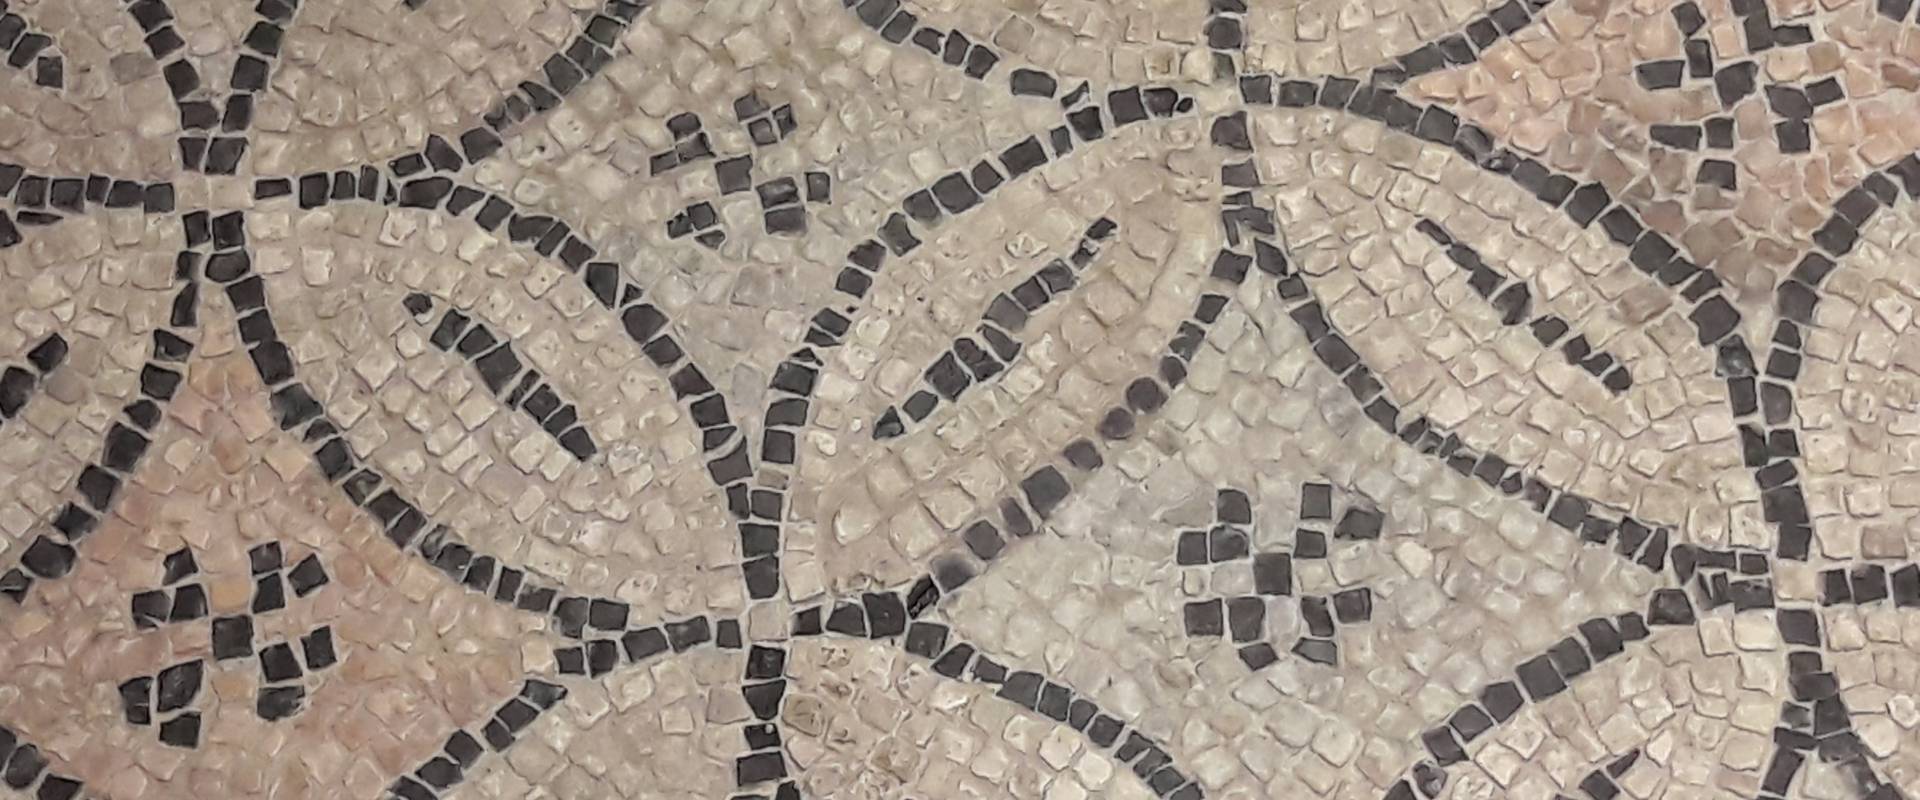 Ravenna - Domus tappeti di pietra - Dettaglio 1 foto di Ysogo